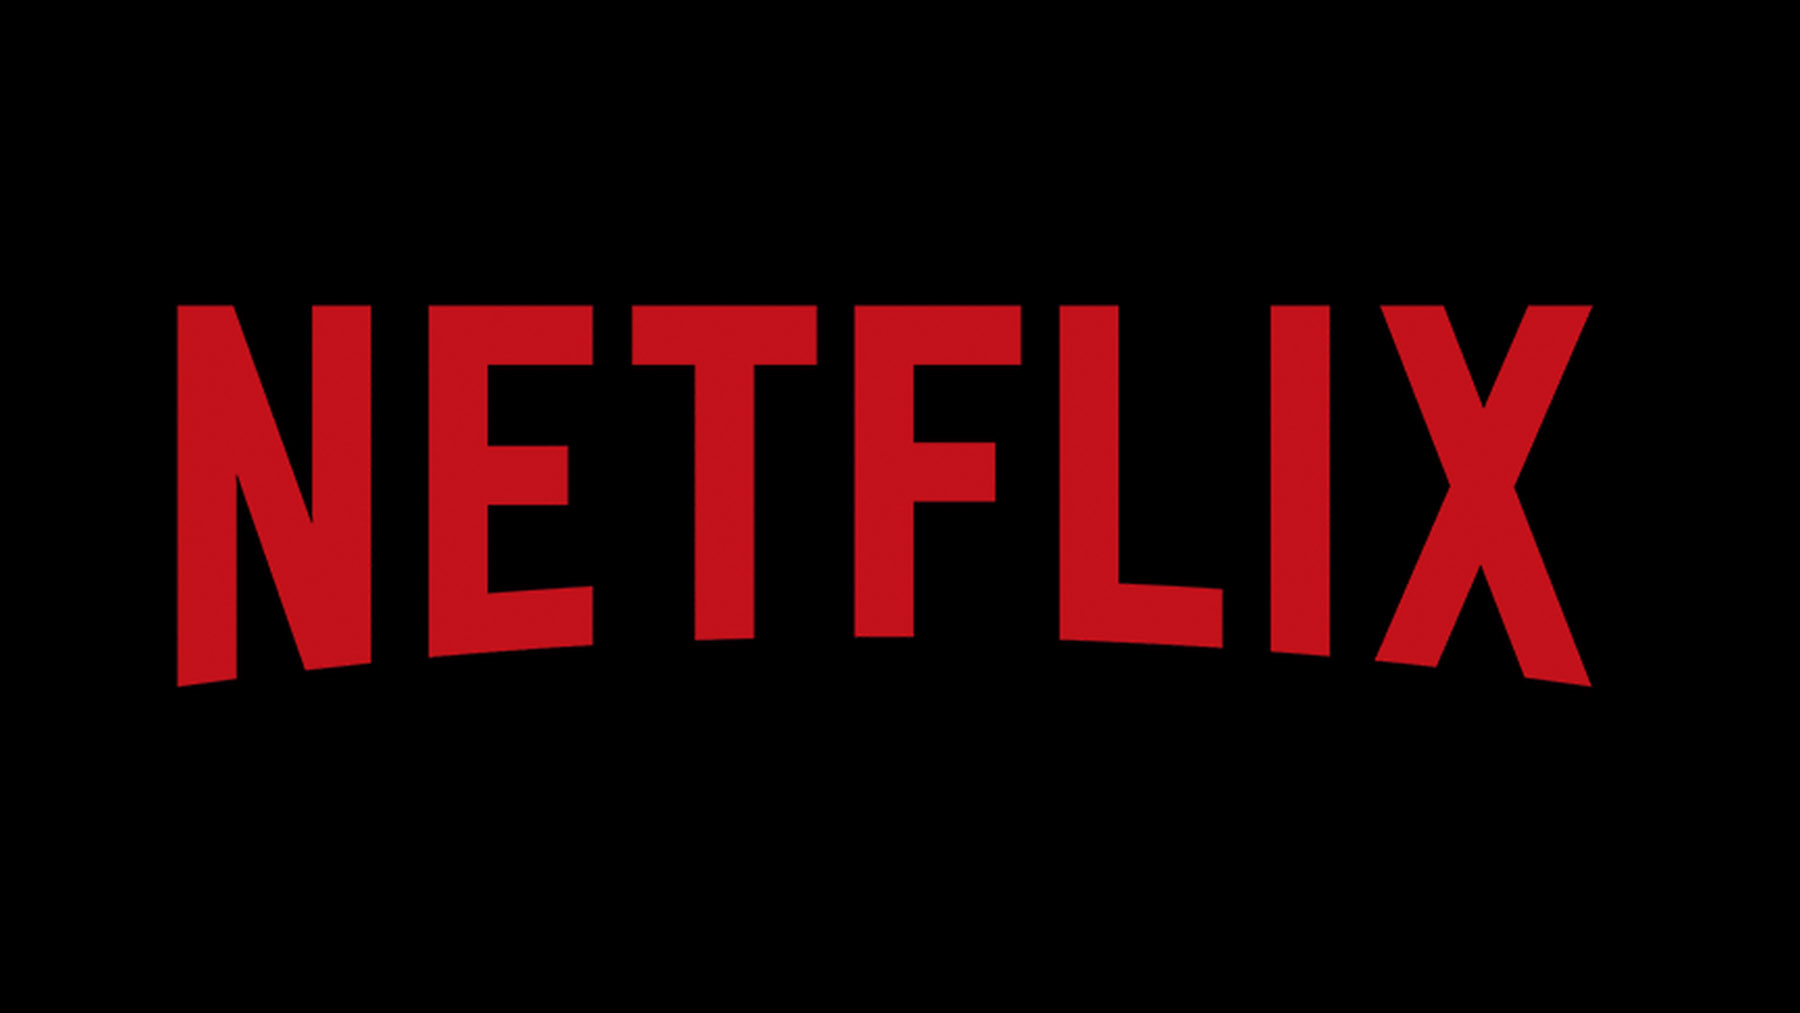 Netflix se hunde con su última película (que parecía triunfar): fracaso y preocupación máxima